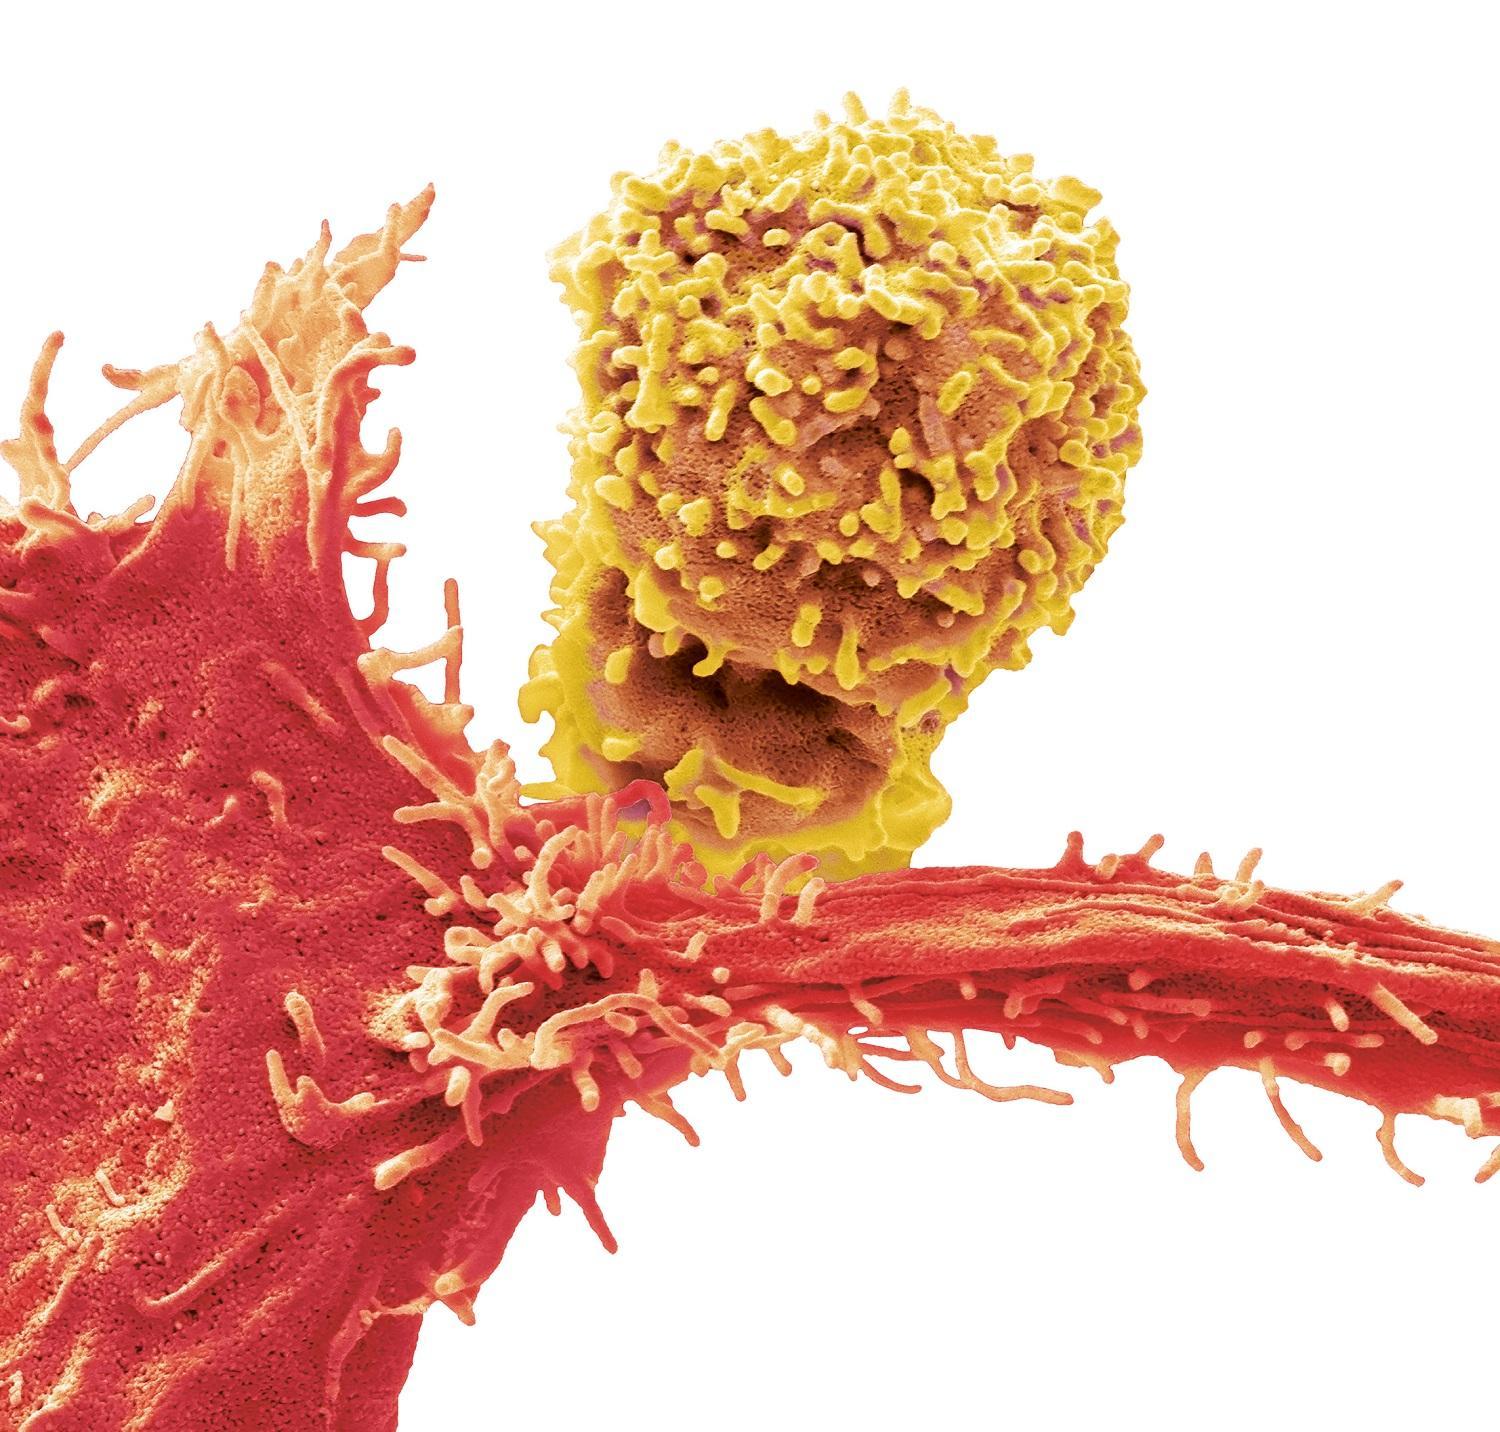 Cellule de cancer du sein avec des globules rouges du sang (image grossie 6000x). Cellule cancéreuse du foie en train de se diviser (image grossie 7600x).